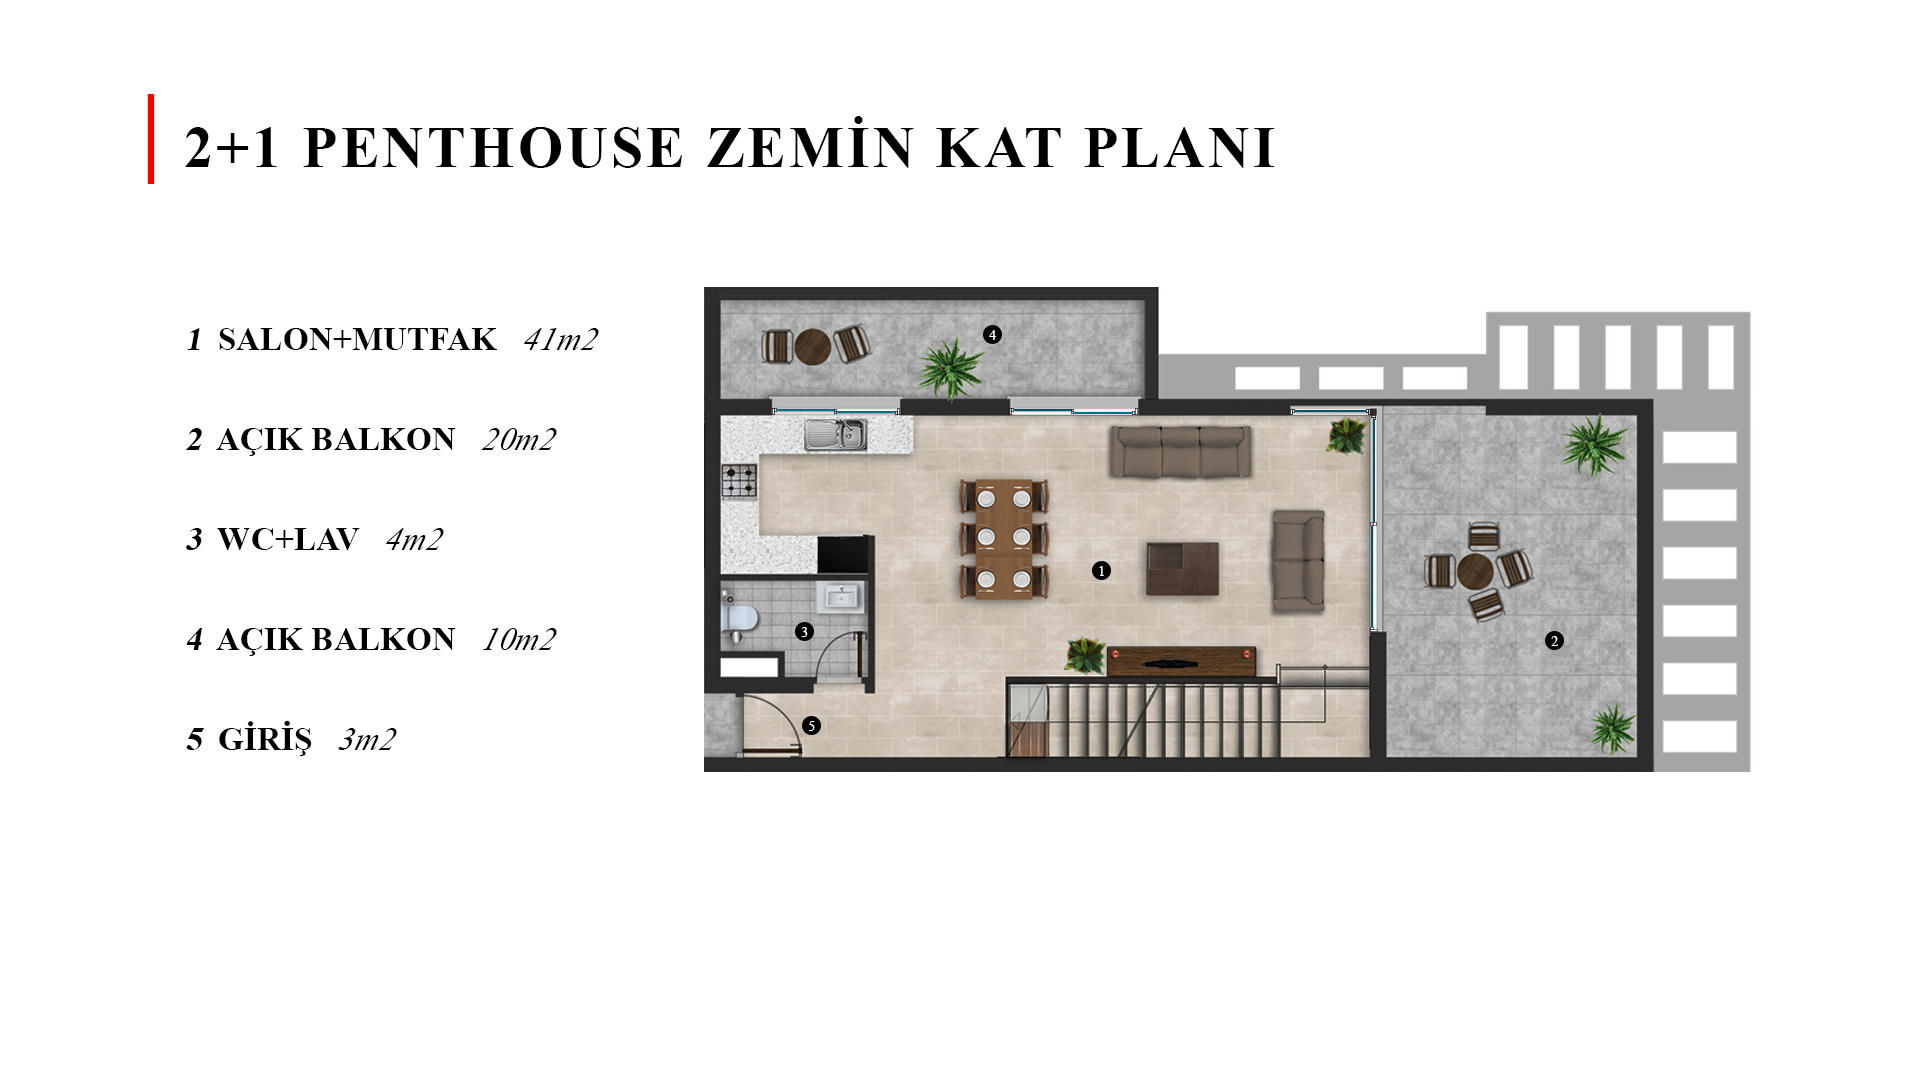 1.Etage (3-Zimmer) Penthouse